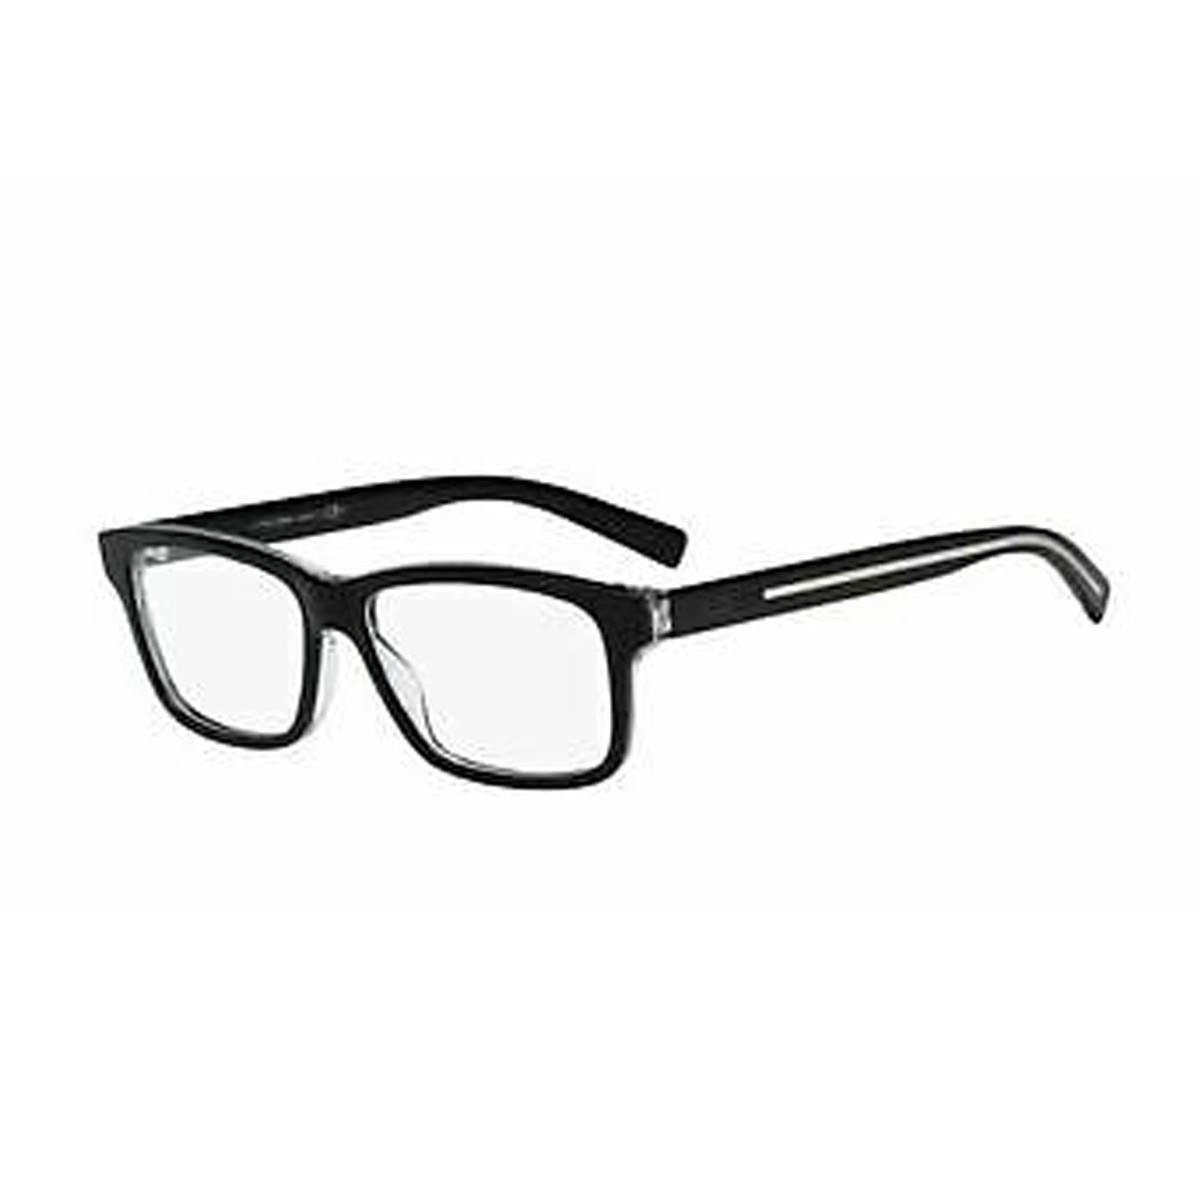 Dior Blacktie 204 | Men's eyeglasses